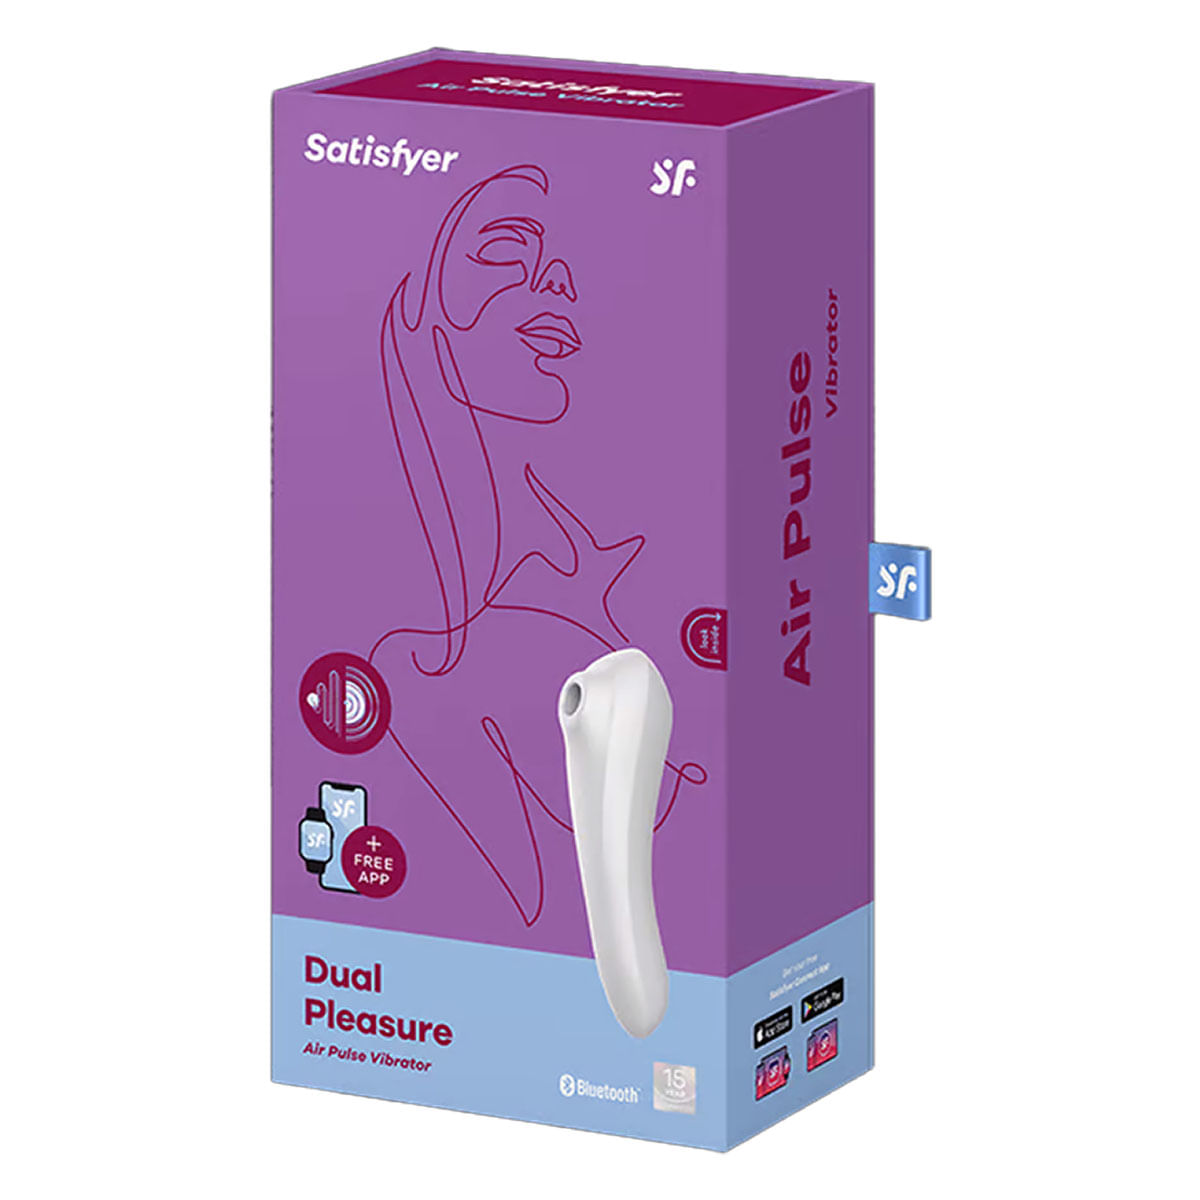 Dual Pleasure Estimulador de Clitoris e Ponto G com 11 modos de vibração Satisfyer